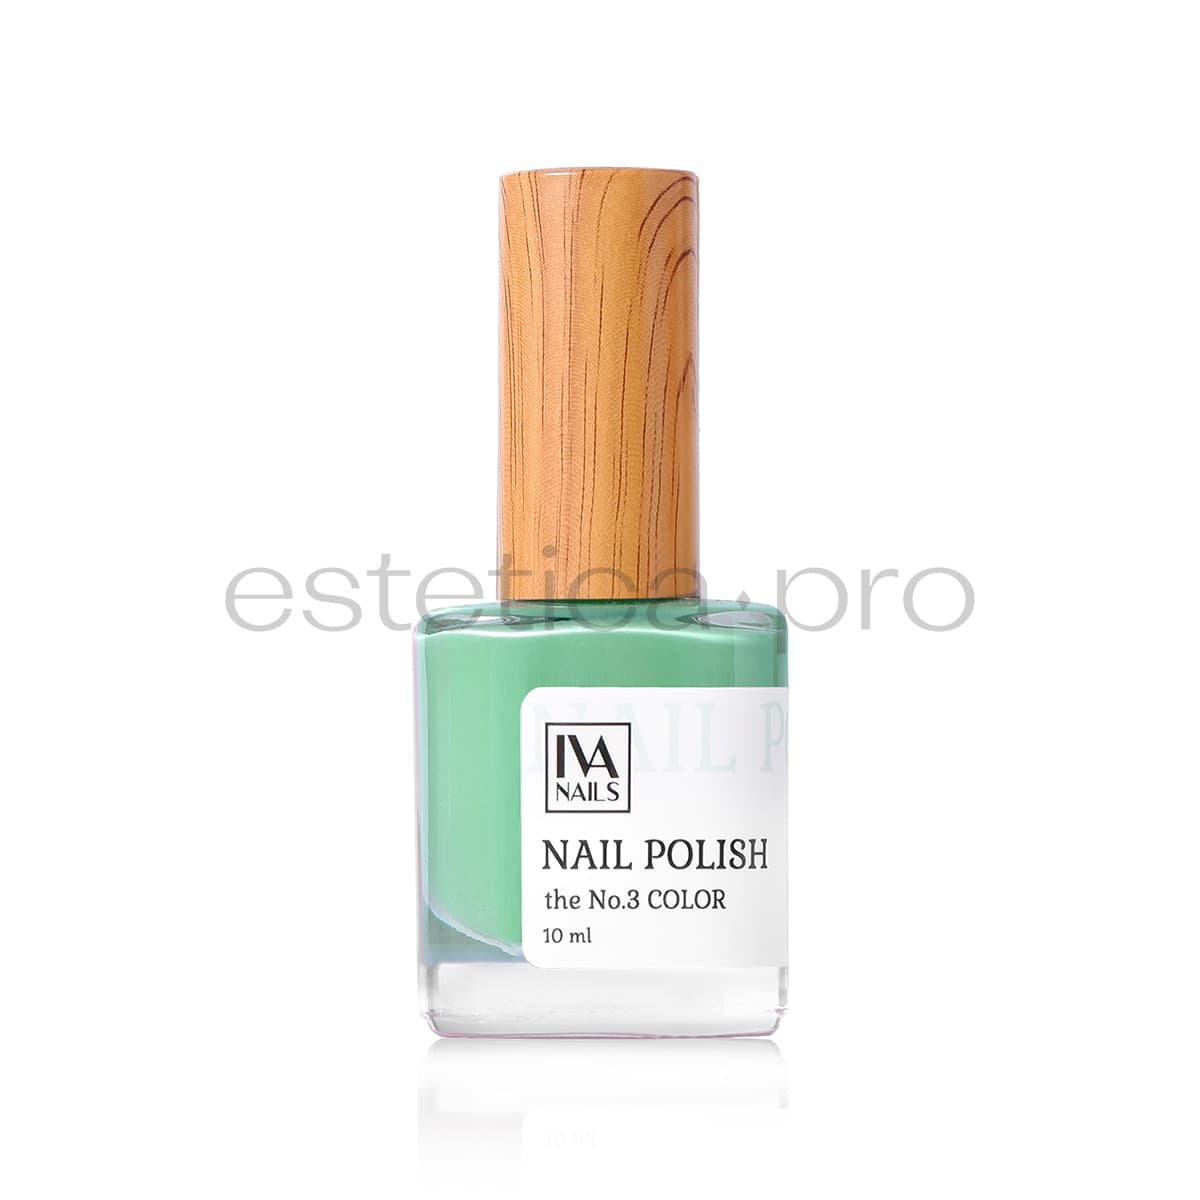 Лак для ногтей Iva Nails 03, 10 мл.